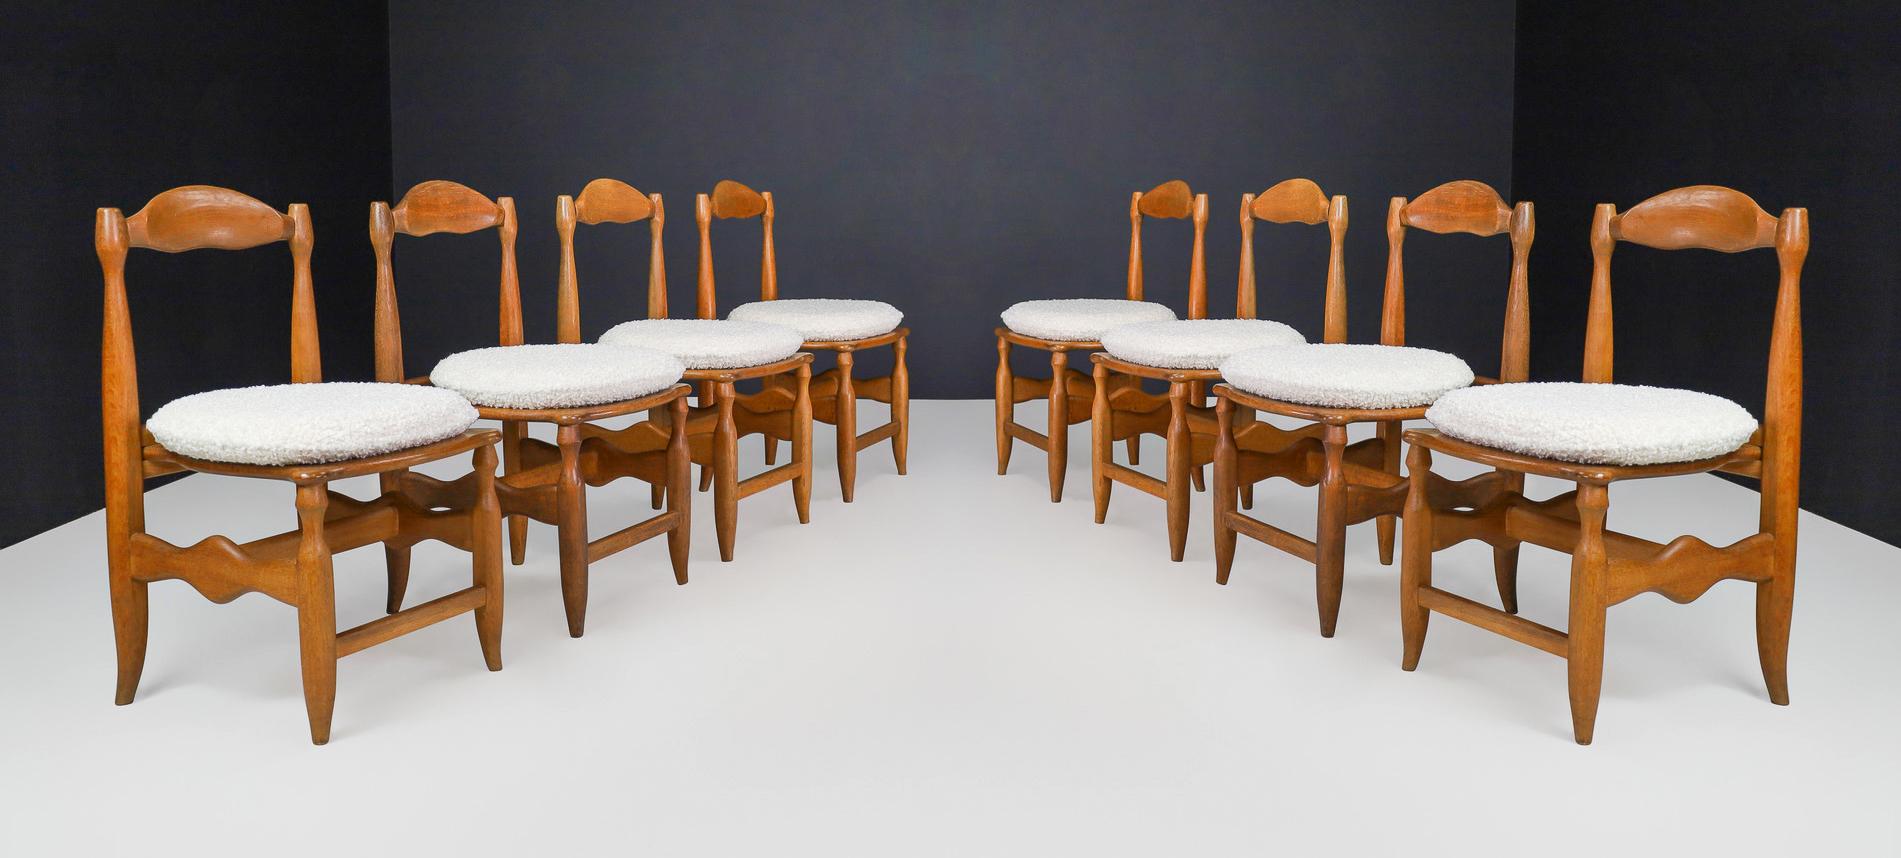 Guillerme & Chambron Ensemble de huit chaises de salle à manger en chêne et coussins en bouclette nouvellement retapissés, France années 1960

Cet ensemble de huit chaises de salle à manger, fabriqué par Jacques Chambron et Robert Guillerme en